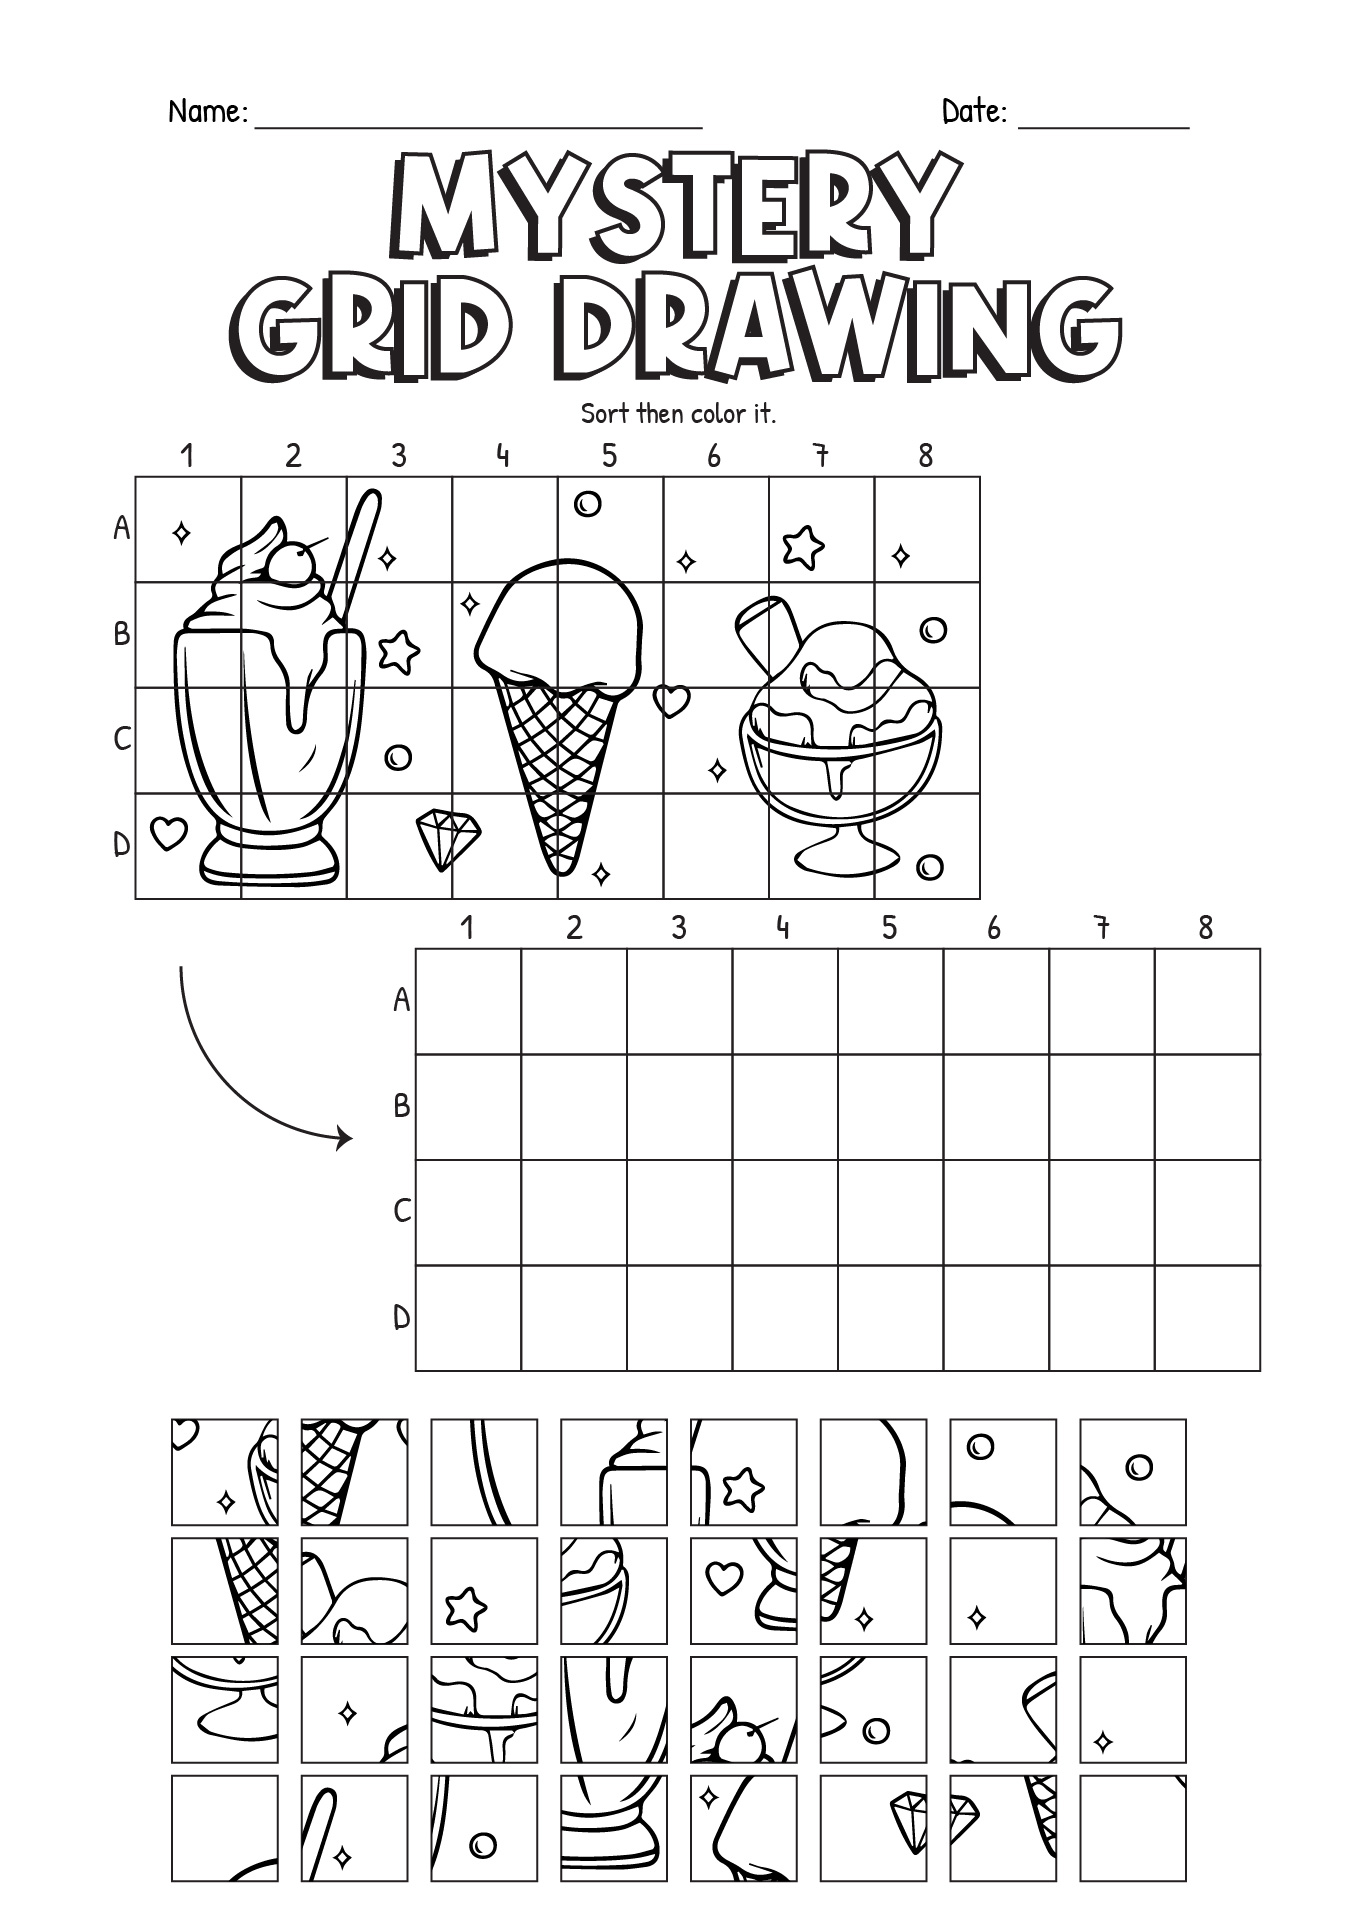 10 Printable Mystery Grid Drawing Worksheets Art Worksheeto